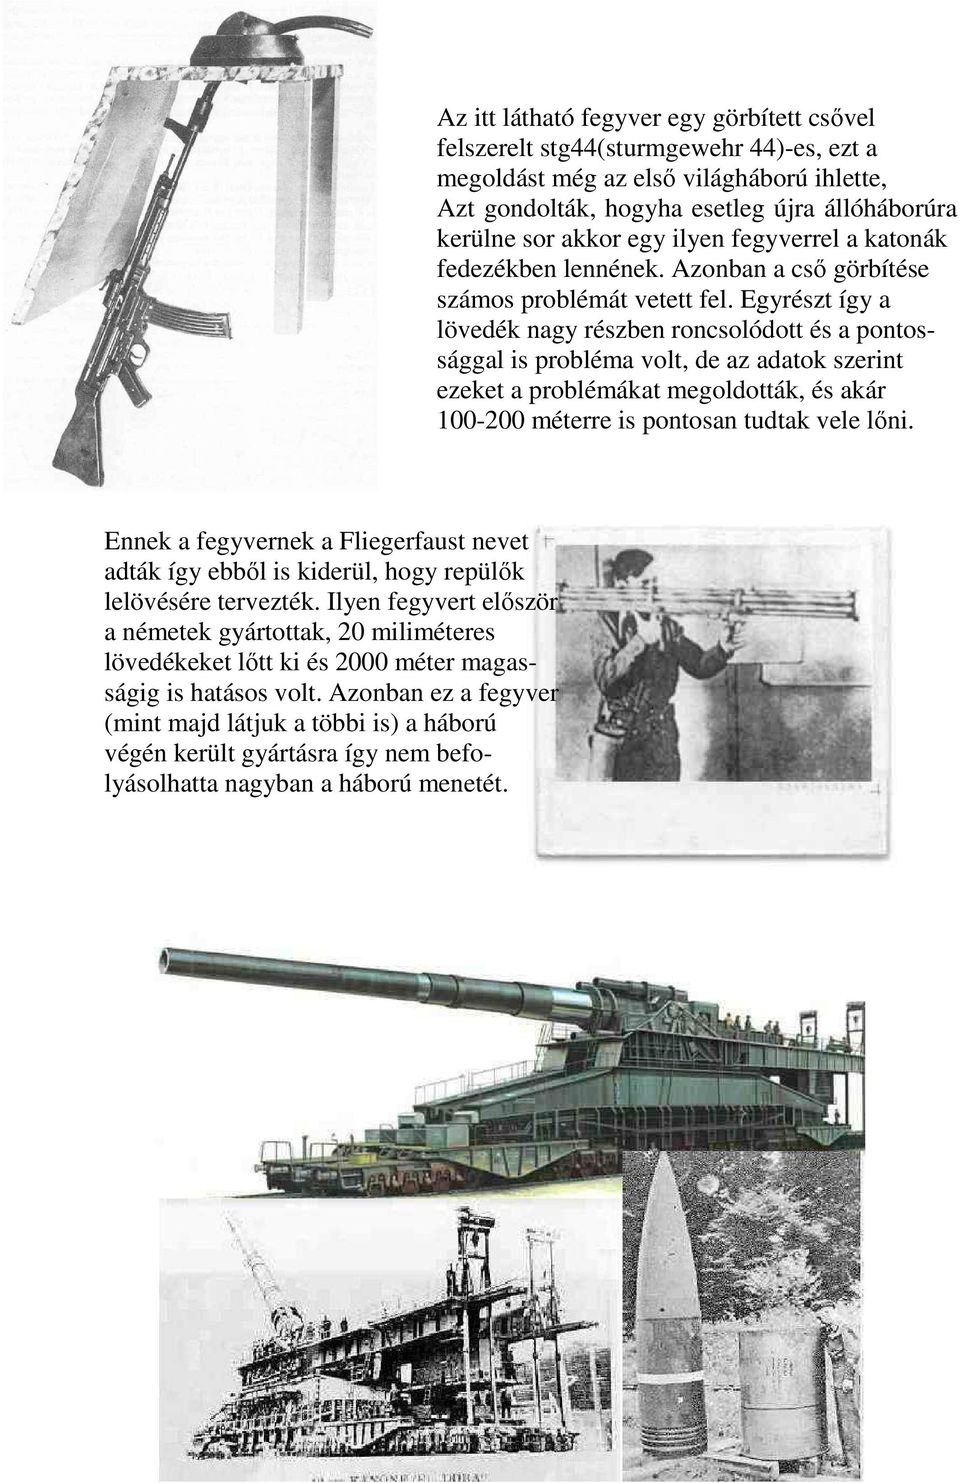 Azonban ez a fegyver (mint majd látjuk a többi is) a háború végén került gyártásra így nem befolyásolhatta nagyban a háború menetét.